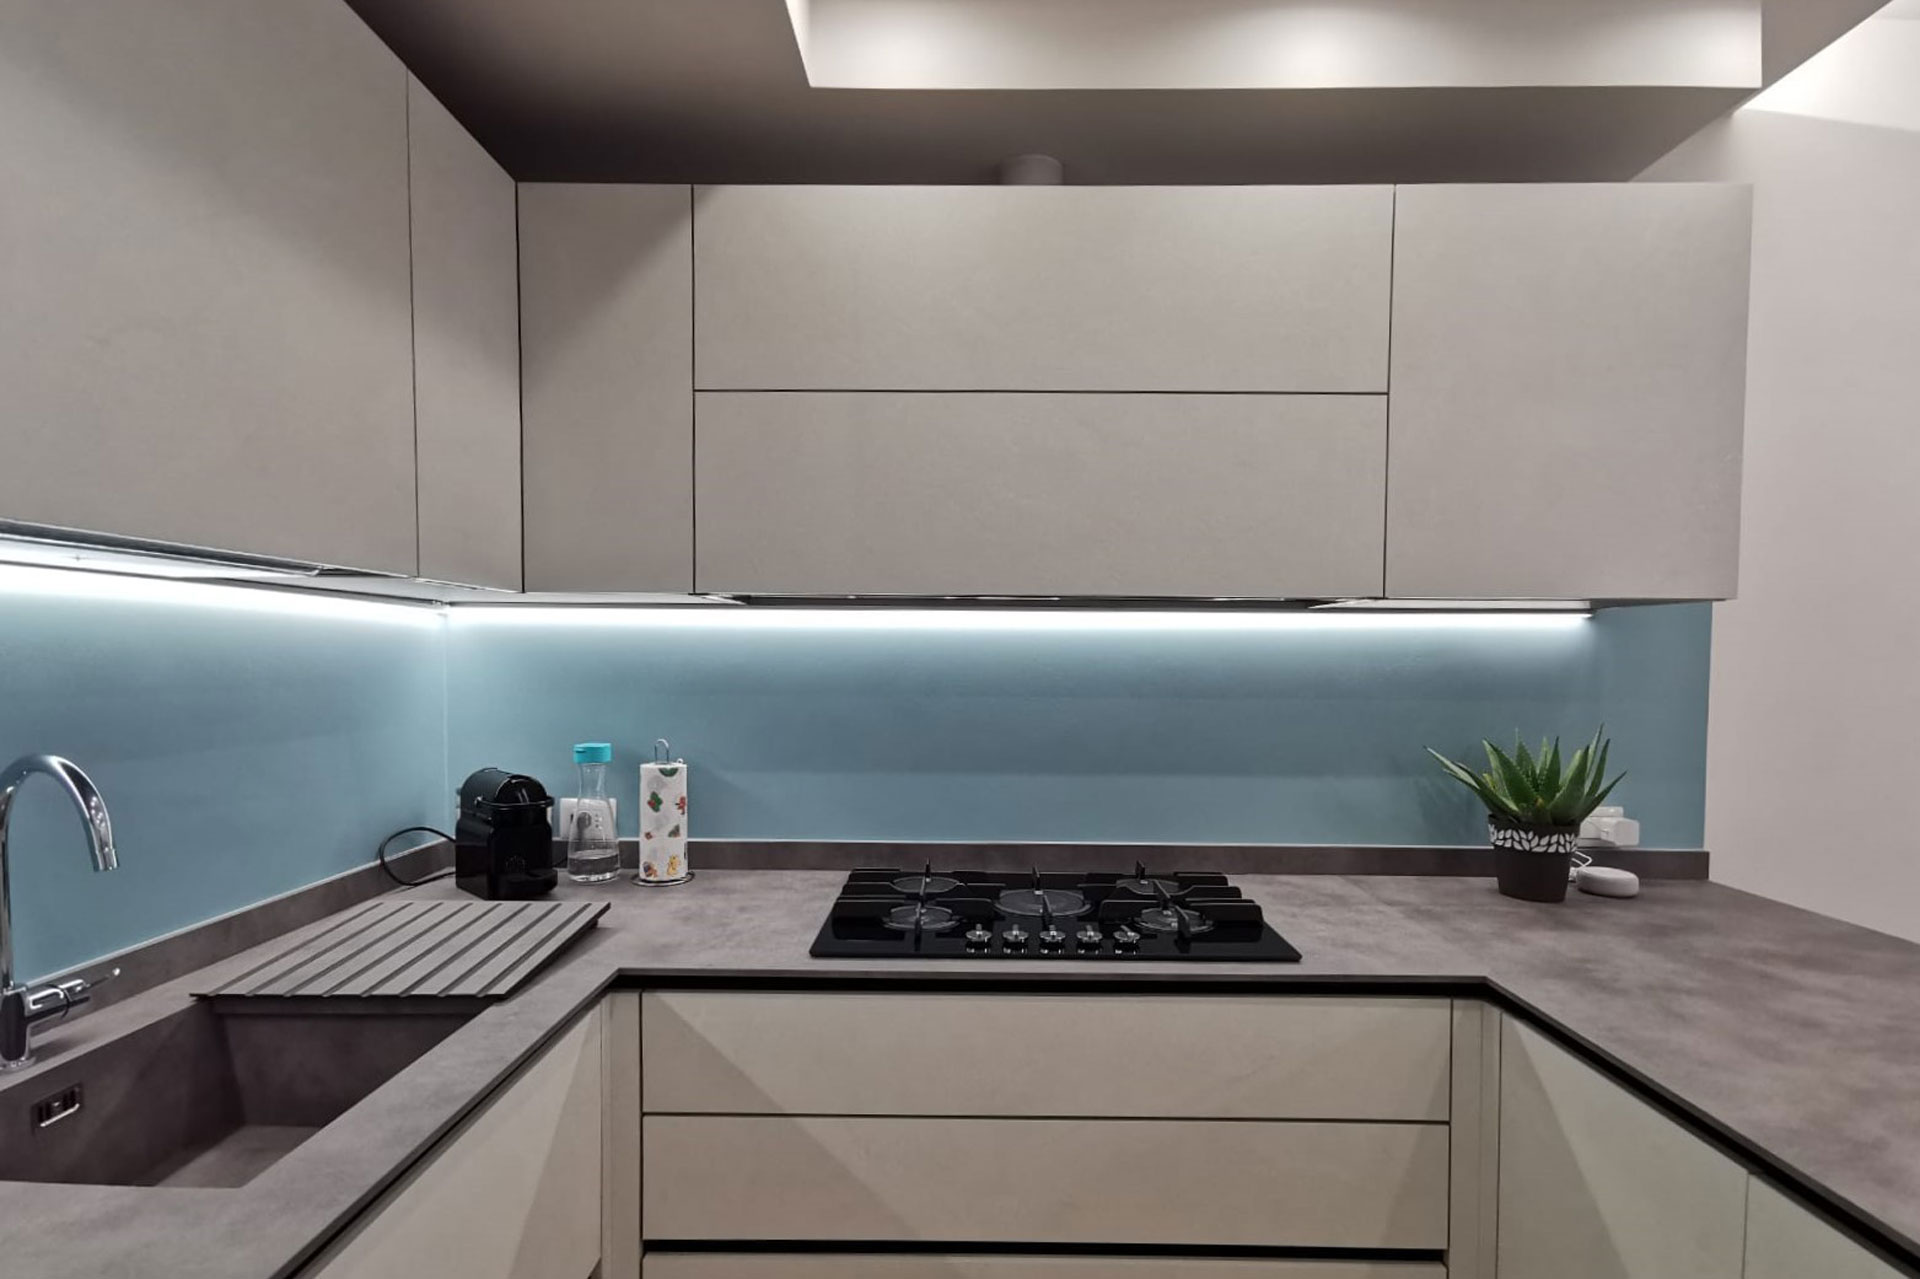 profili led alluminio sotto pensile illuminazione cucina